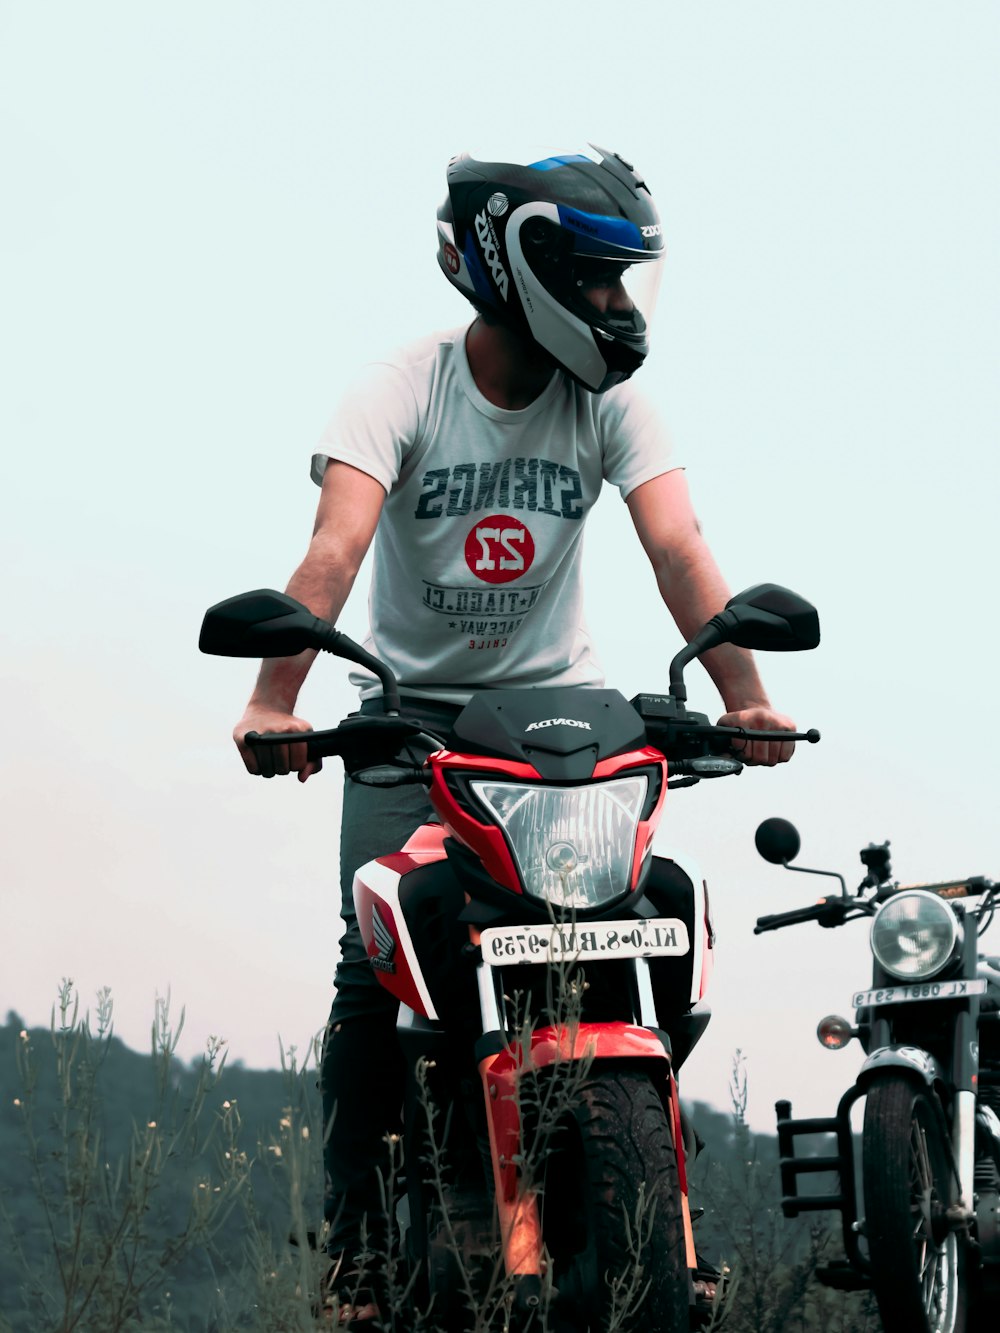 Hombre con camiseta blanca y roja de cuello redondo montando motocicleta roja y negra